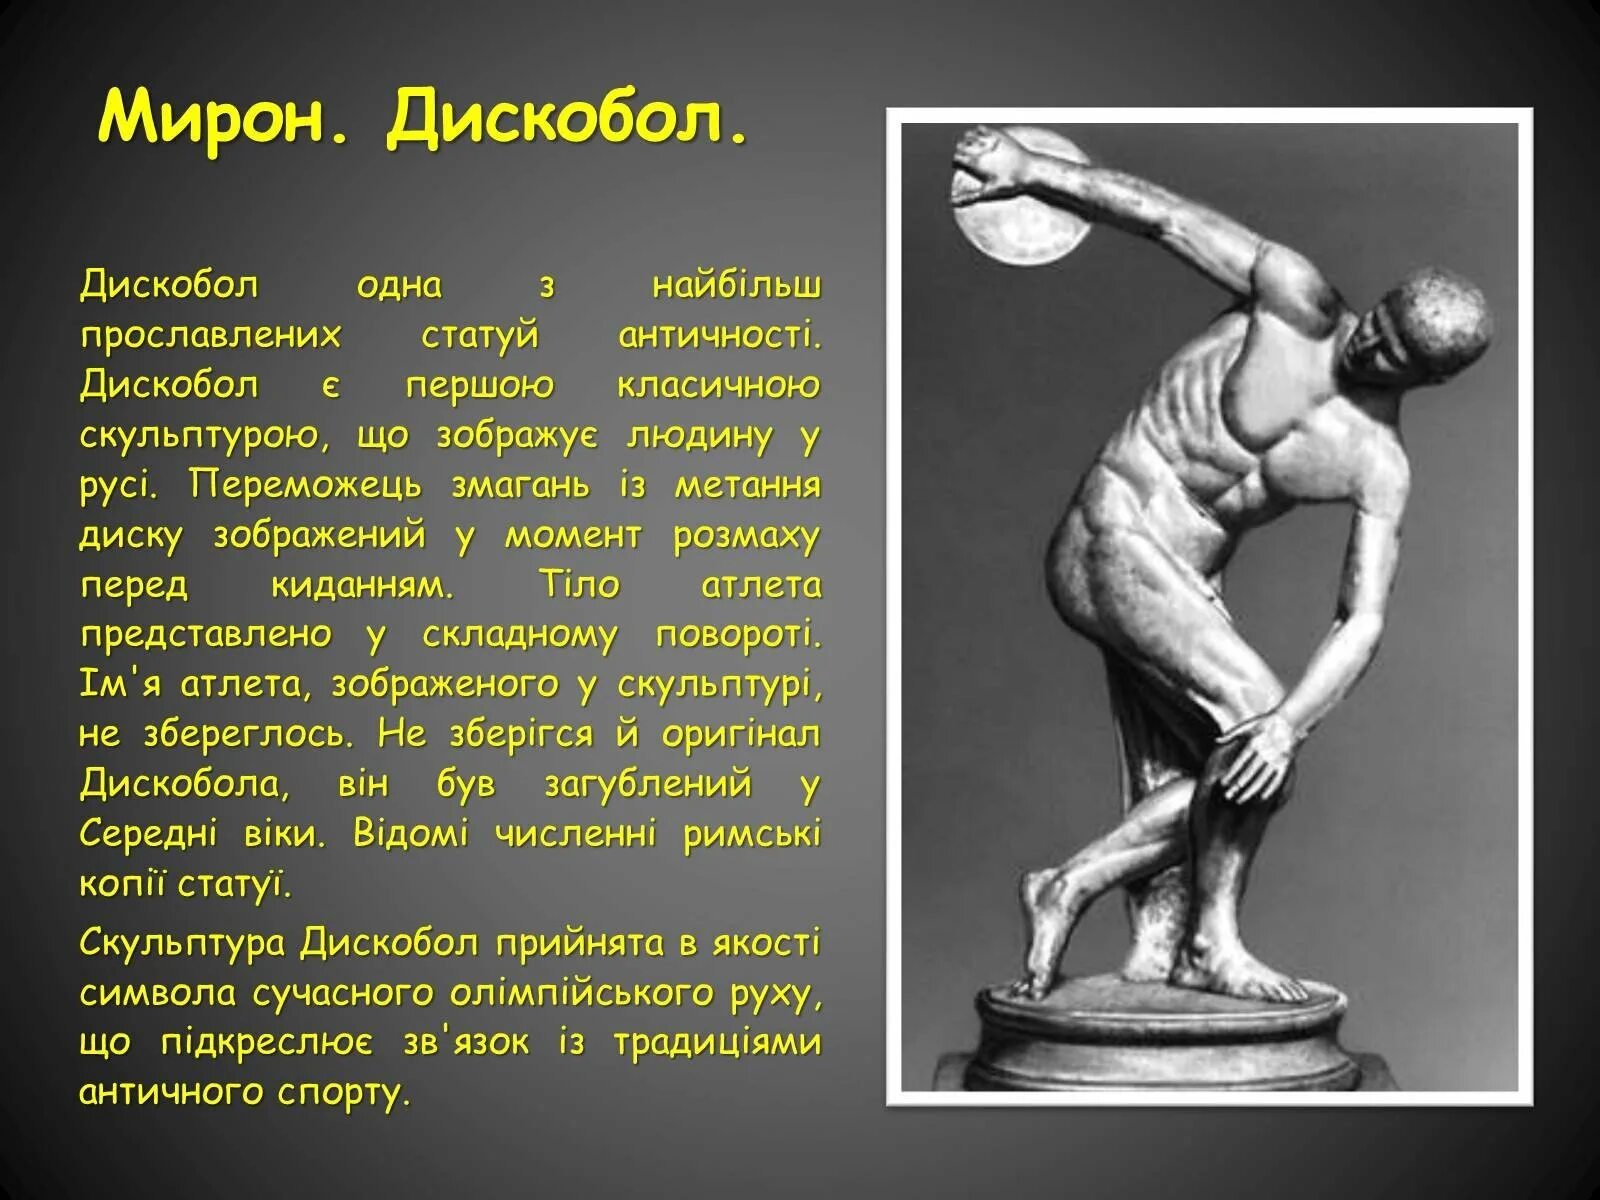 Скульптура древней Греции скульпторы древней Греции дискобол. Произведение мирона